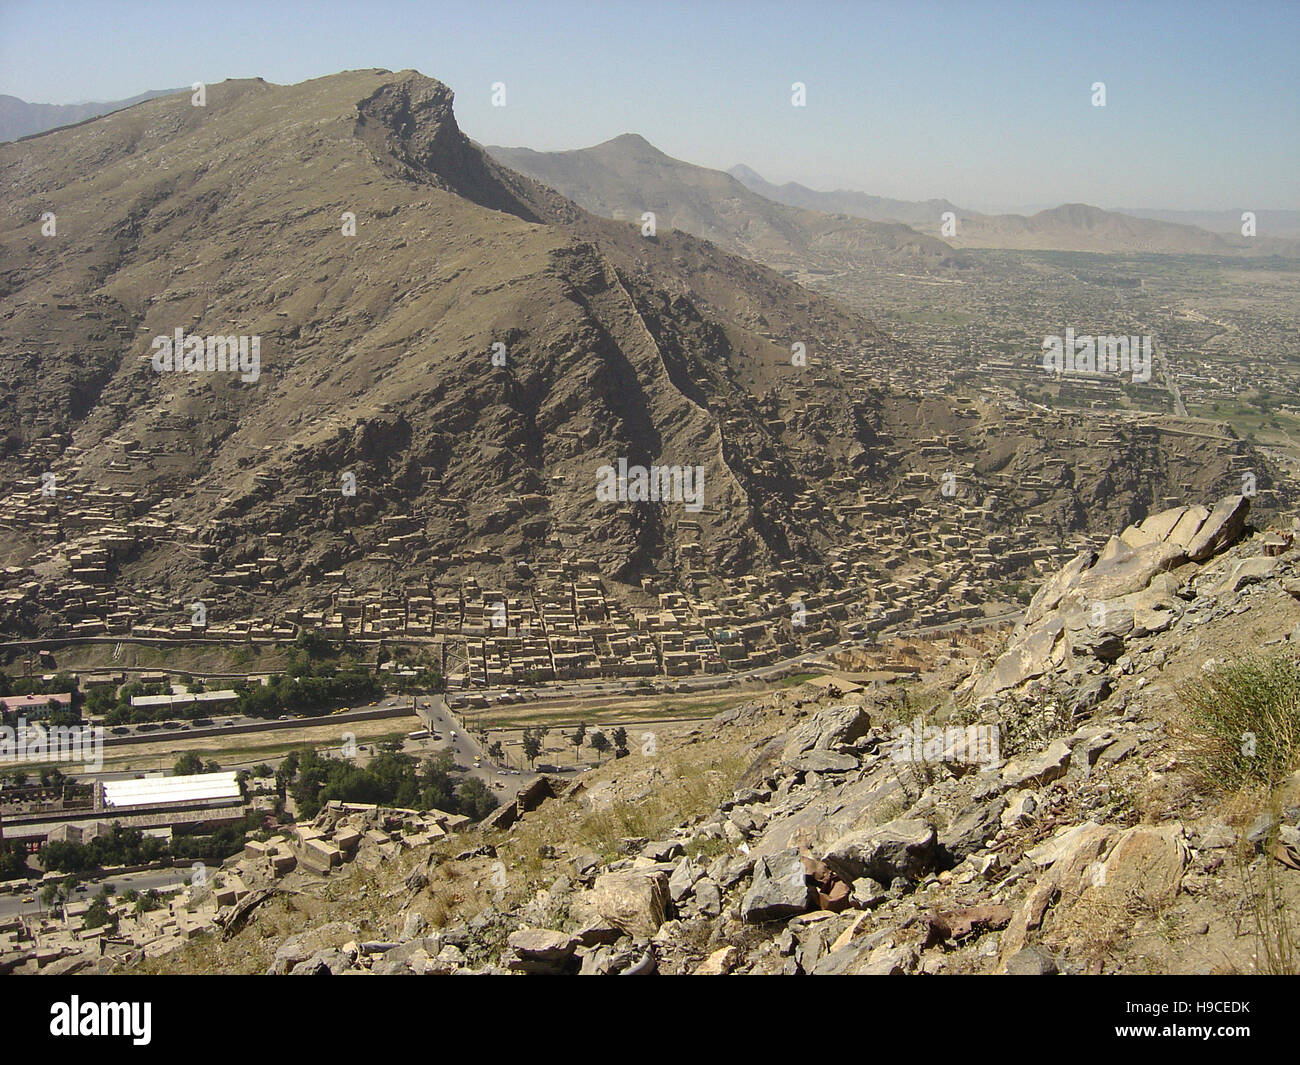 28 maggio 2004 visto dalla parte superiore della Asmai altezze (TV hill): una veduta aerea di Kabul guardando a sud. Foto Stock